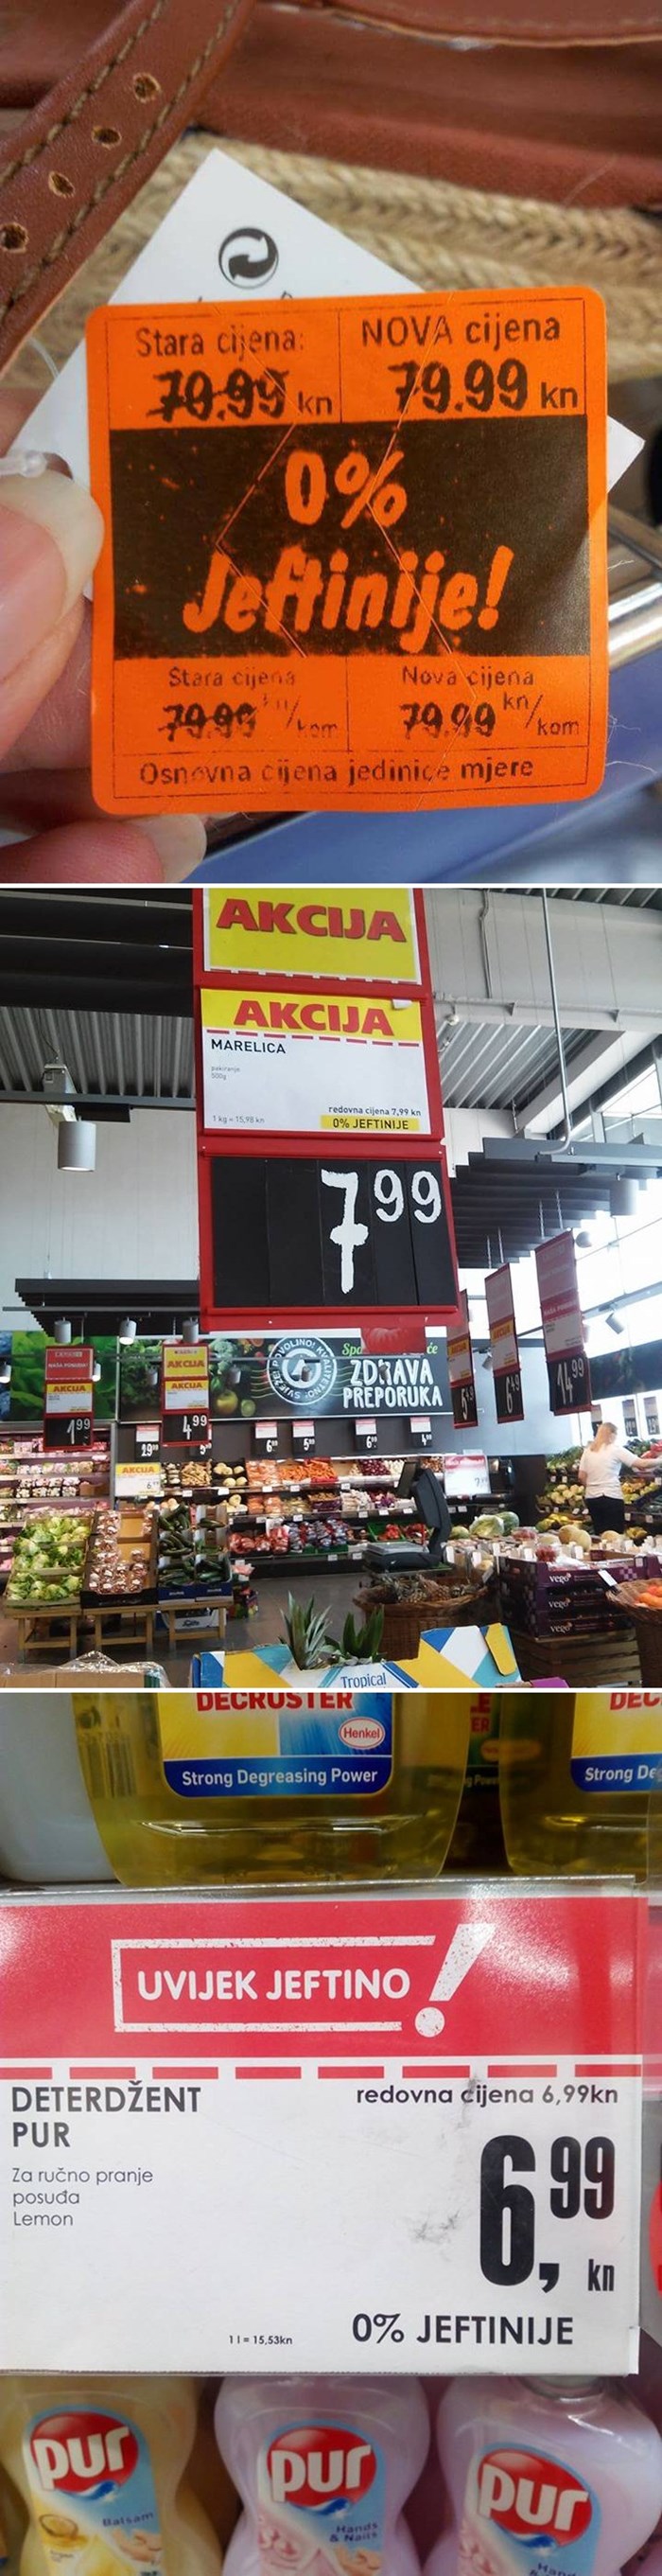 Nećete vjerovati što su kupci uočili u raznim supermarketima diljem Hrvatske